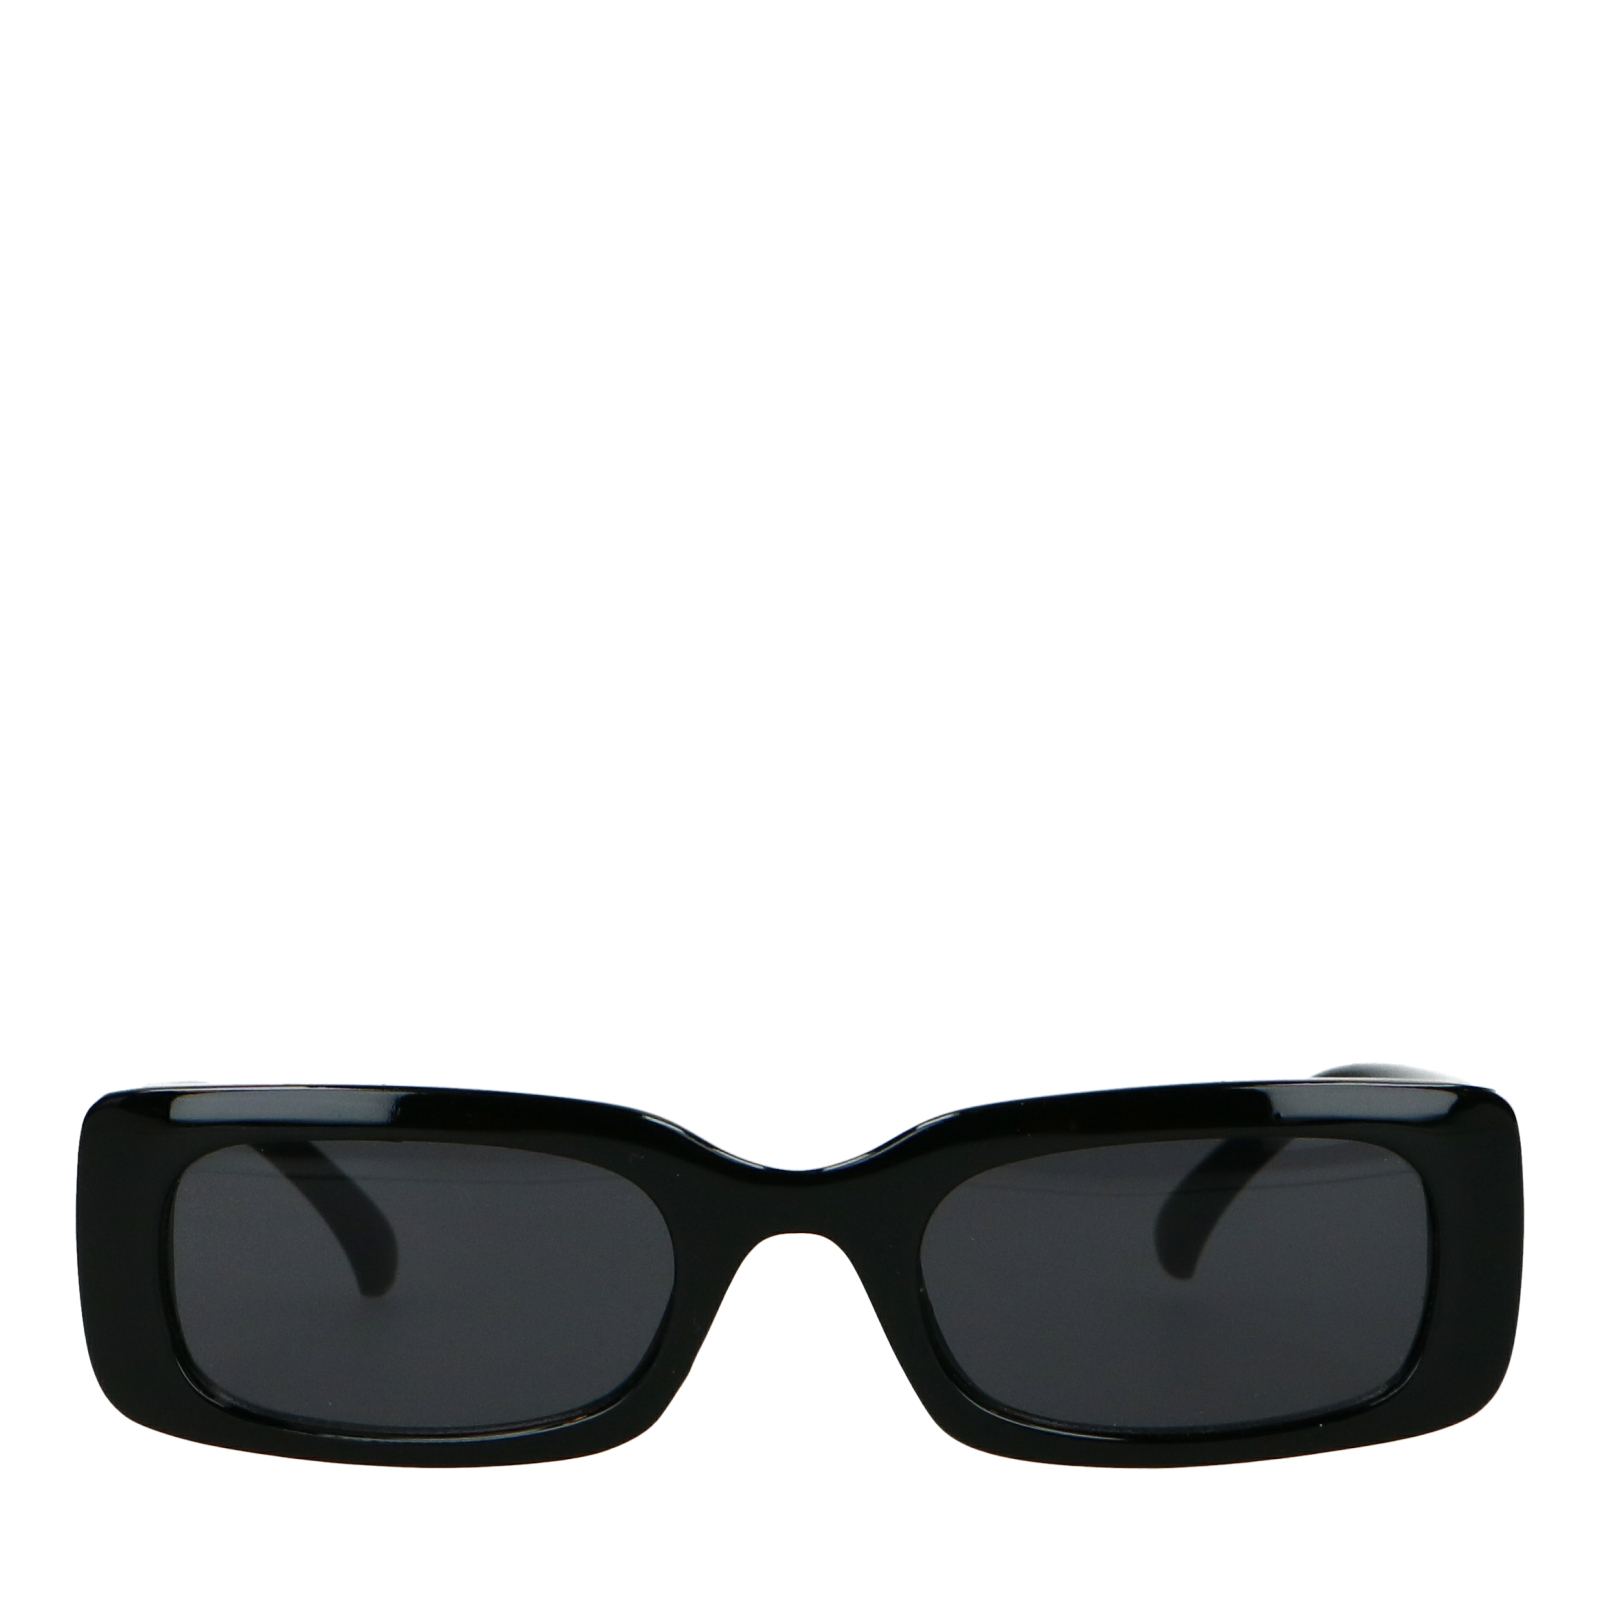 Eckige schwarze Sonnenbrille, Sonnenbrillen, Sacha